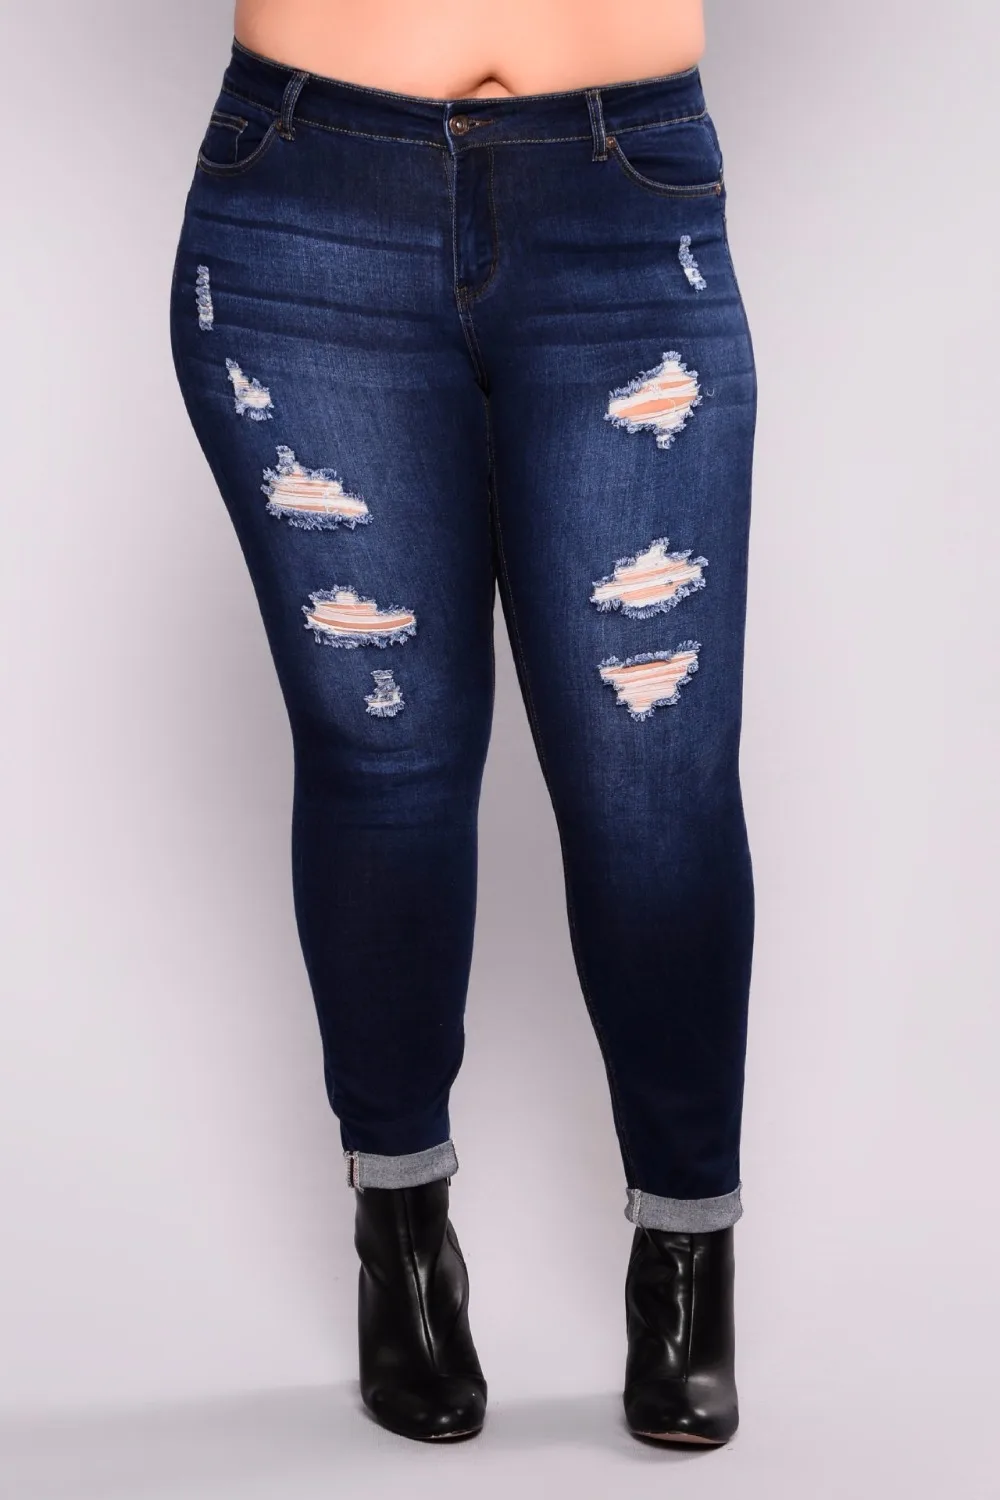 L-5XL 2018 плюс Размеры свободные джинсы женские рваные карандаш Брюки для девочек Высокая Талия Blue Jean